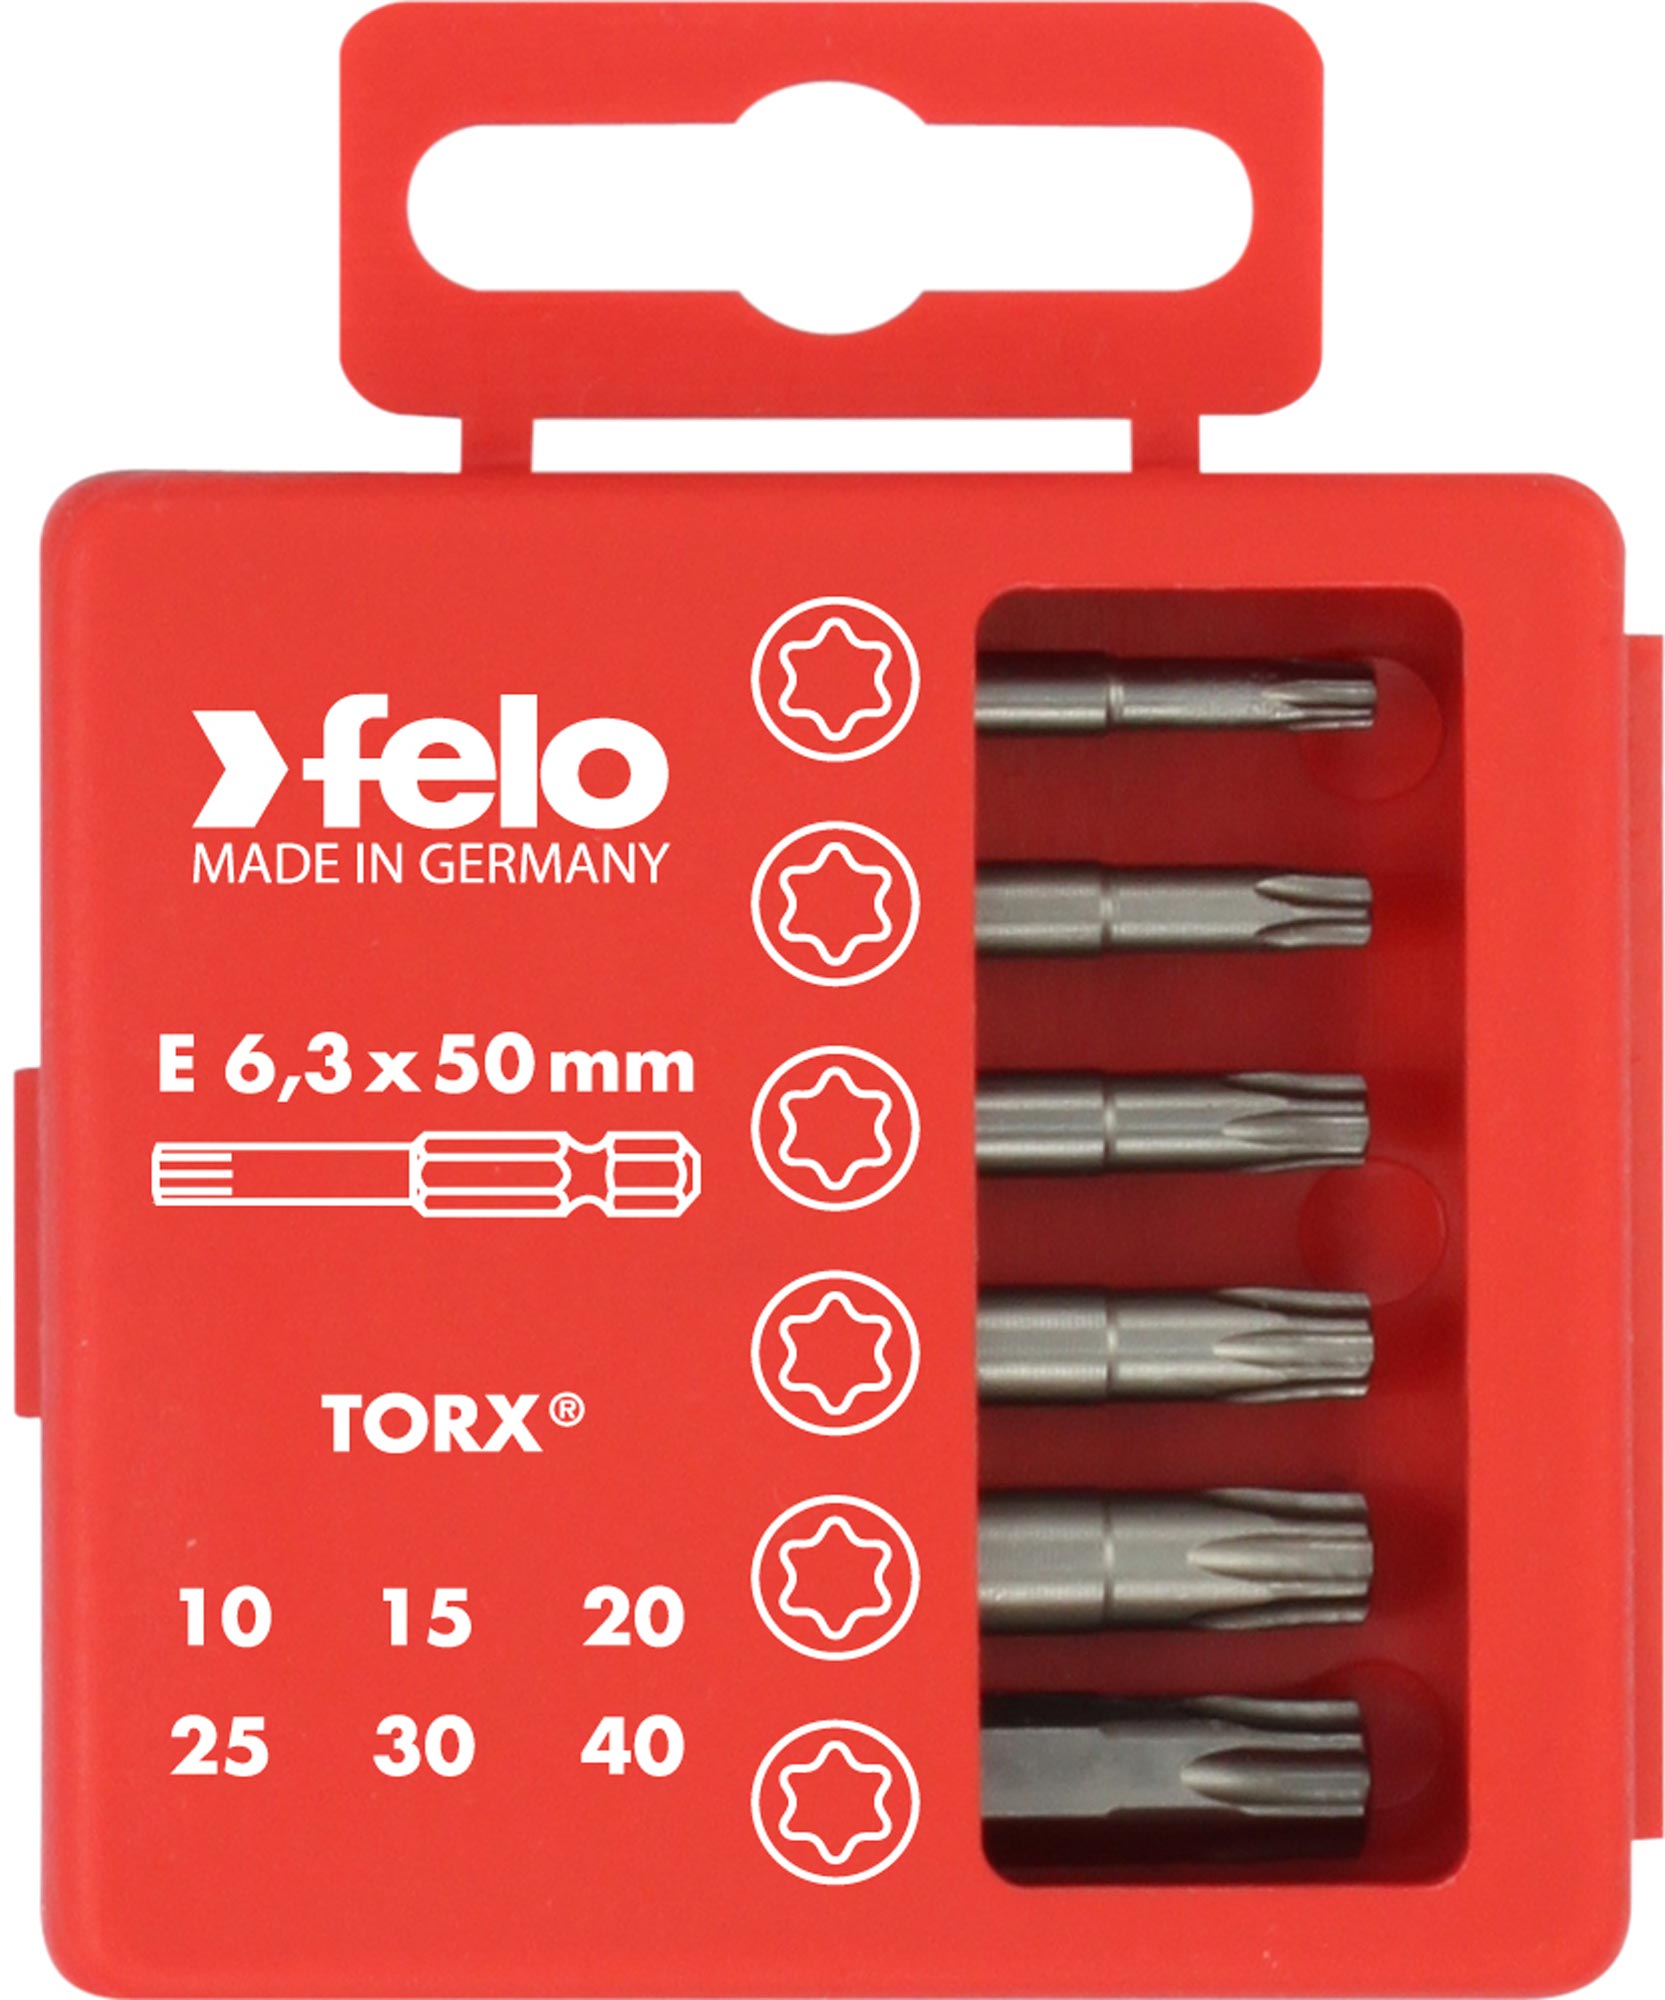 Felo Profi Bit-Box 6-teilig Industrie E 6,3 x 50 mm Torx T Bit Set - T 10 | T 15 | T 20 | T 25 | T 30 | T 40 (FL-03691516) Bild-01